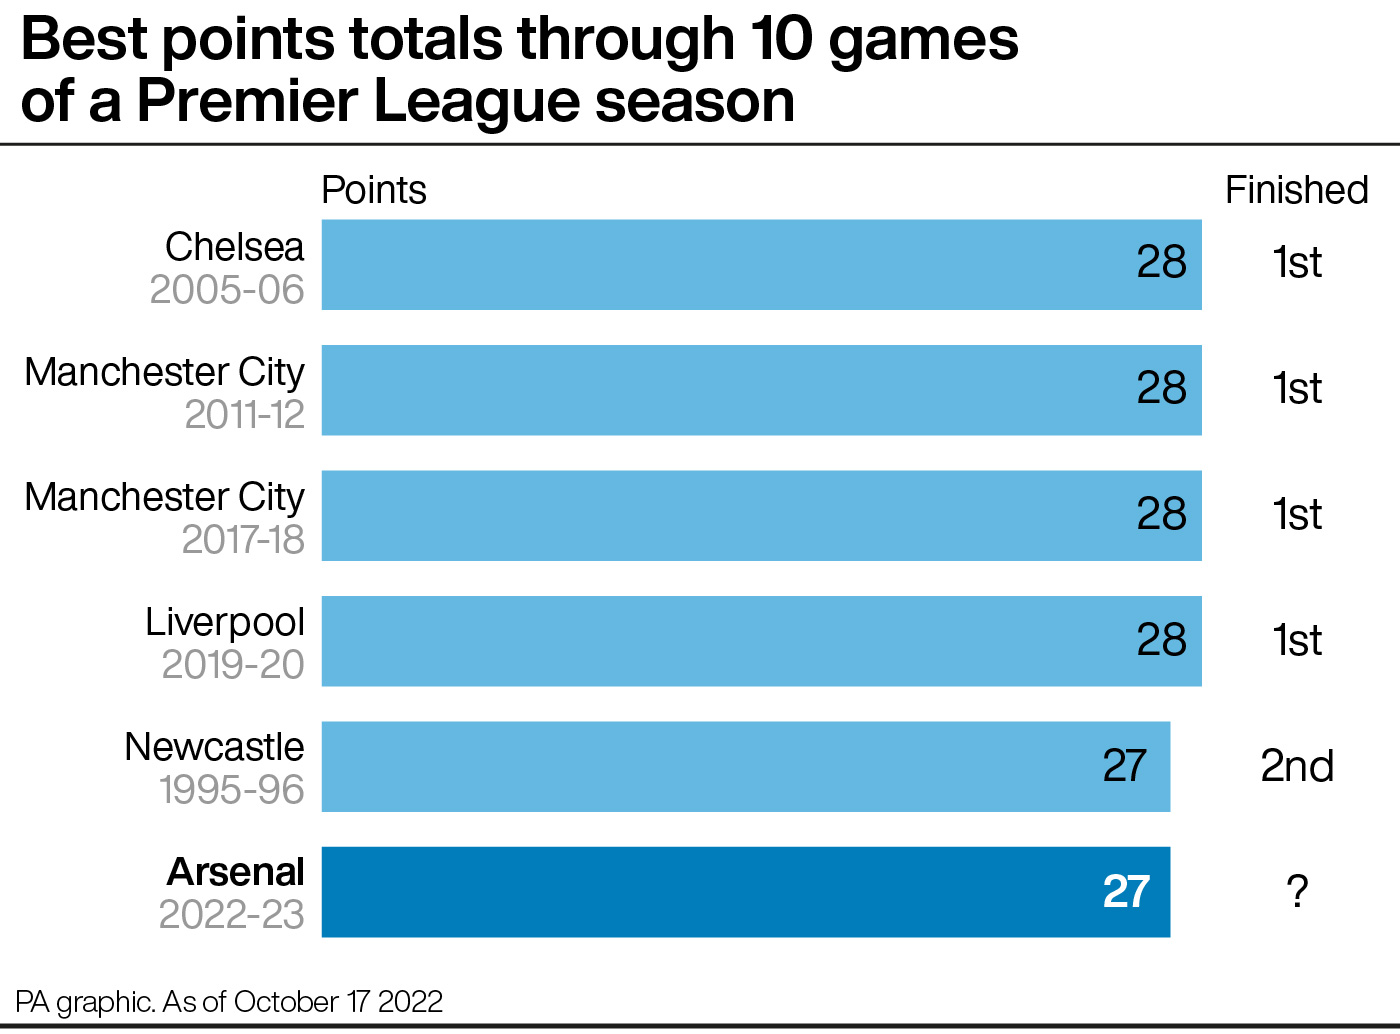 Best points totals through 10 games of a Premier League season